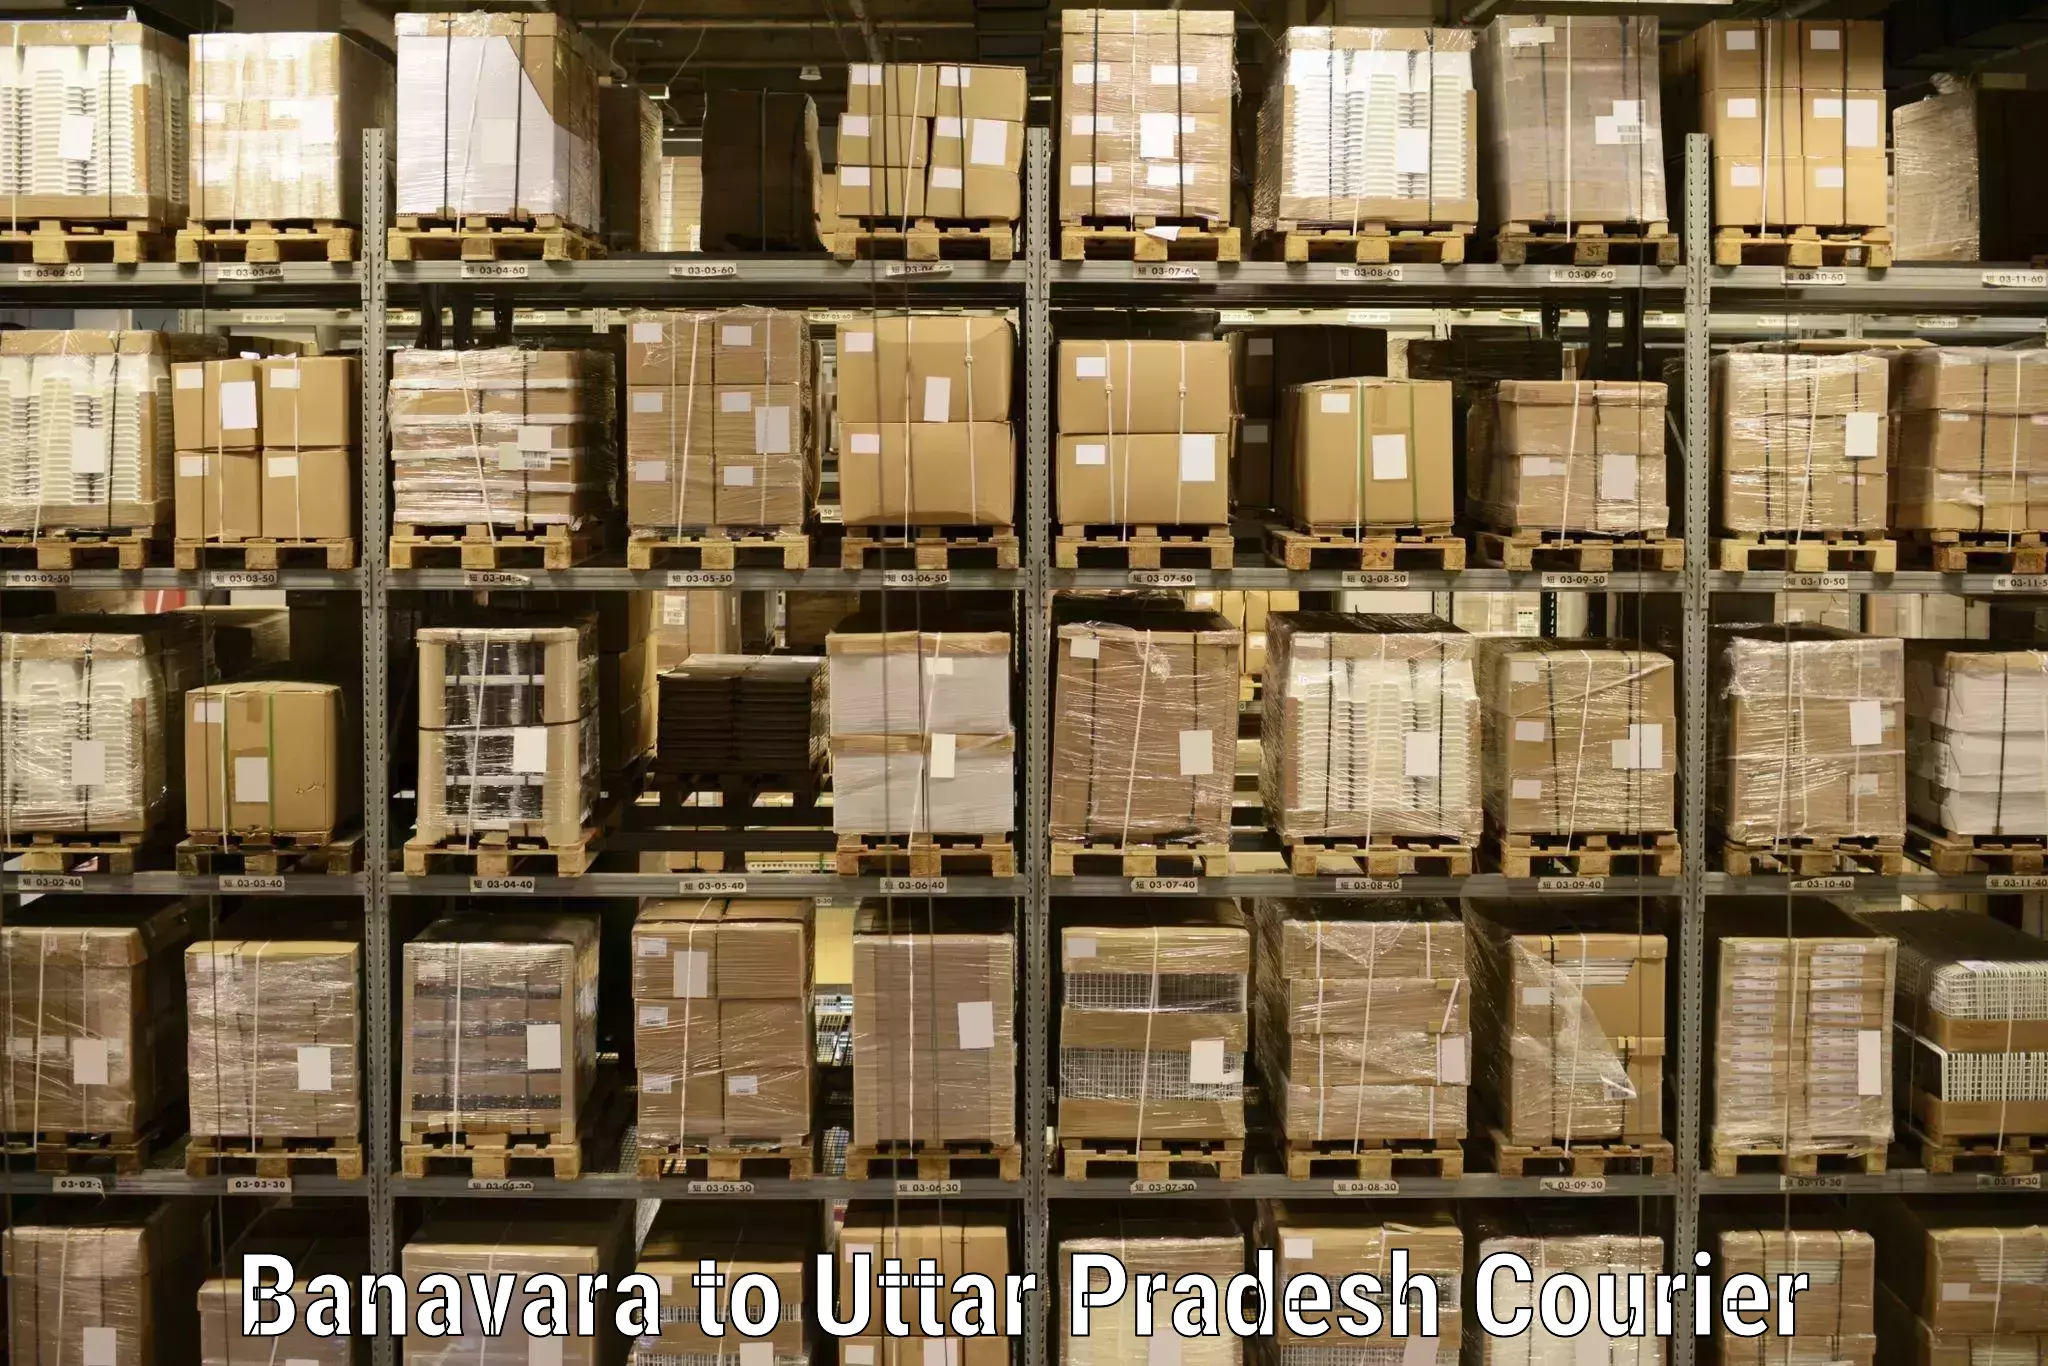 Cargo delivery service Banavara to Harpalpur